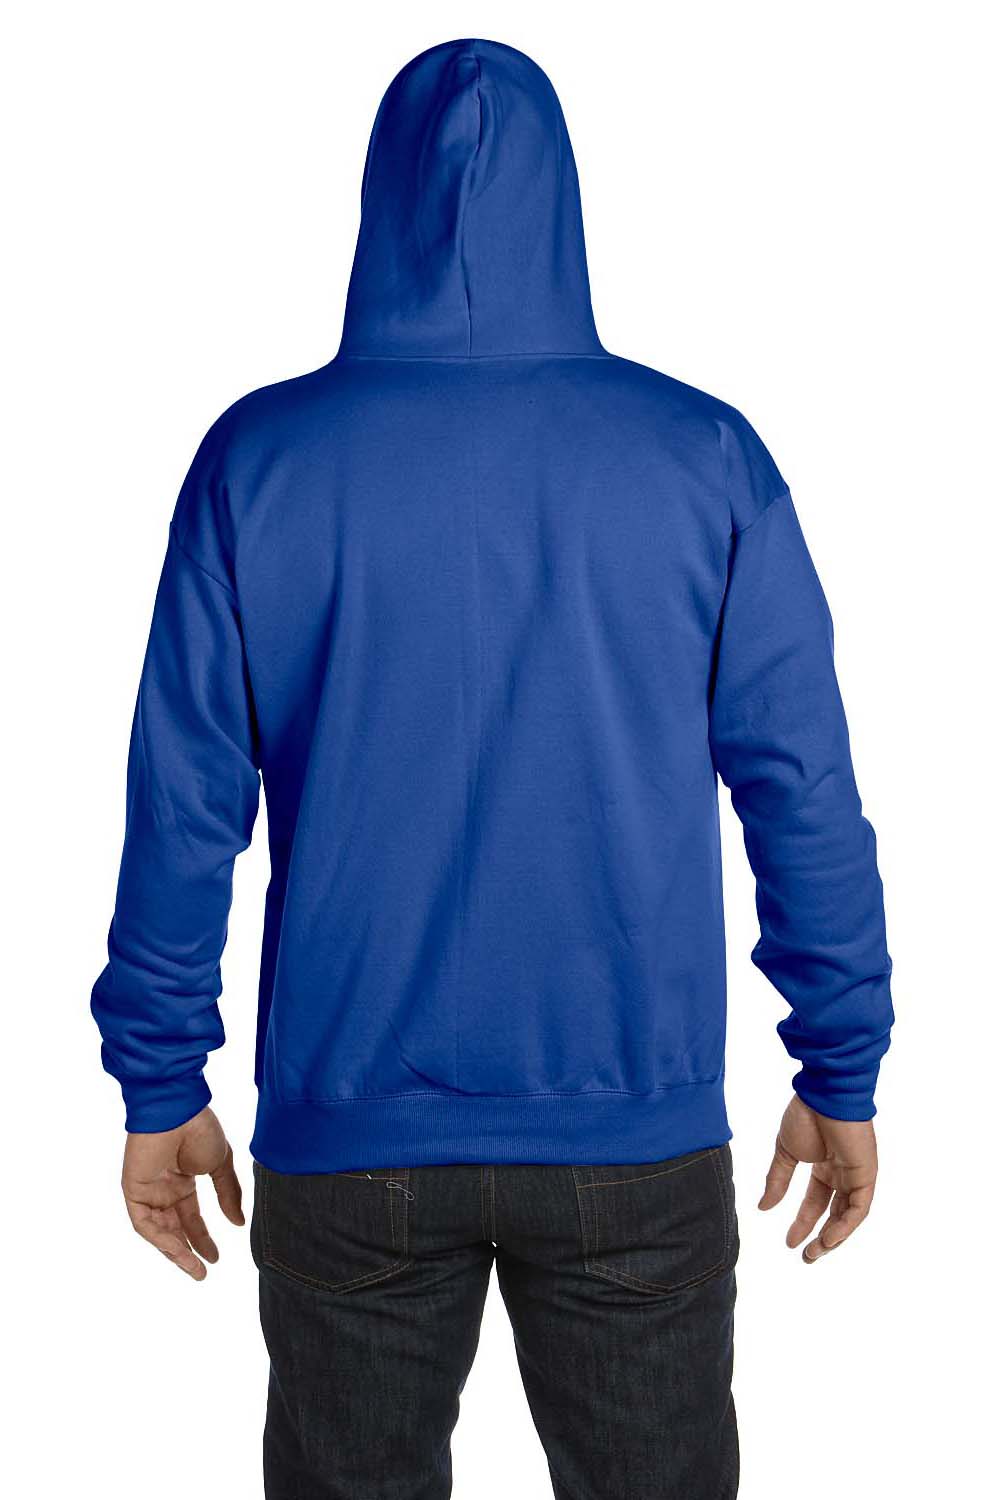 Hanes P180 Mens EcoSmart Print Pro XP Full Zip Hooded Sweatshirt Hoodie Royal Blue Back